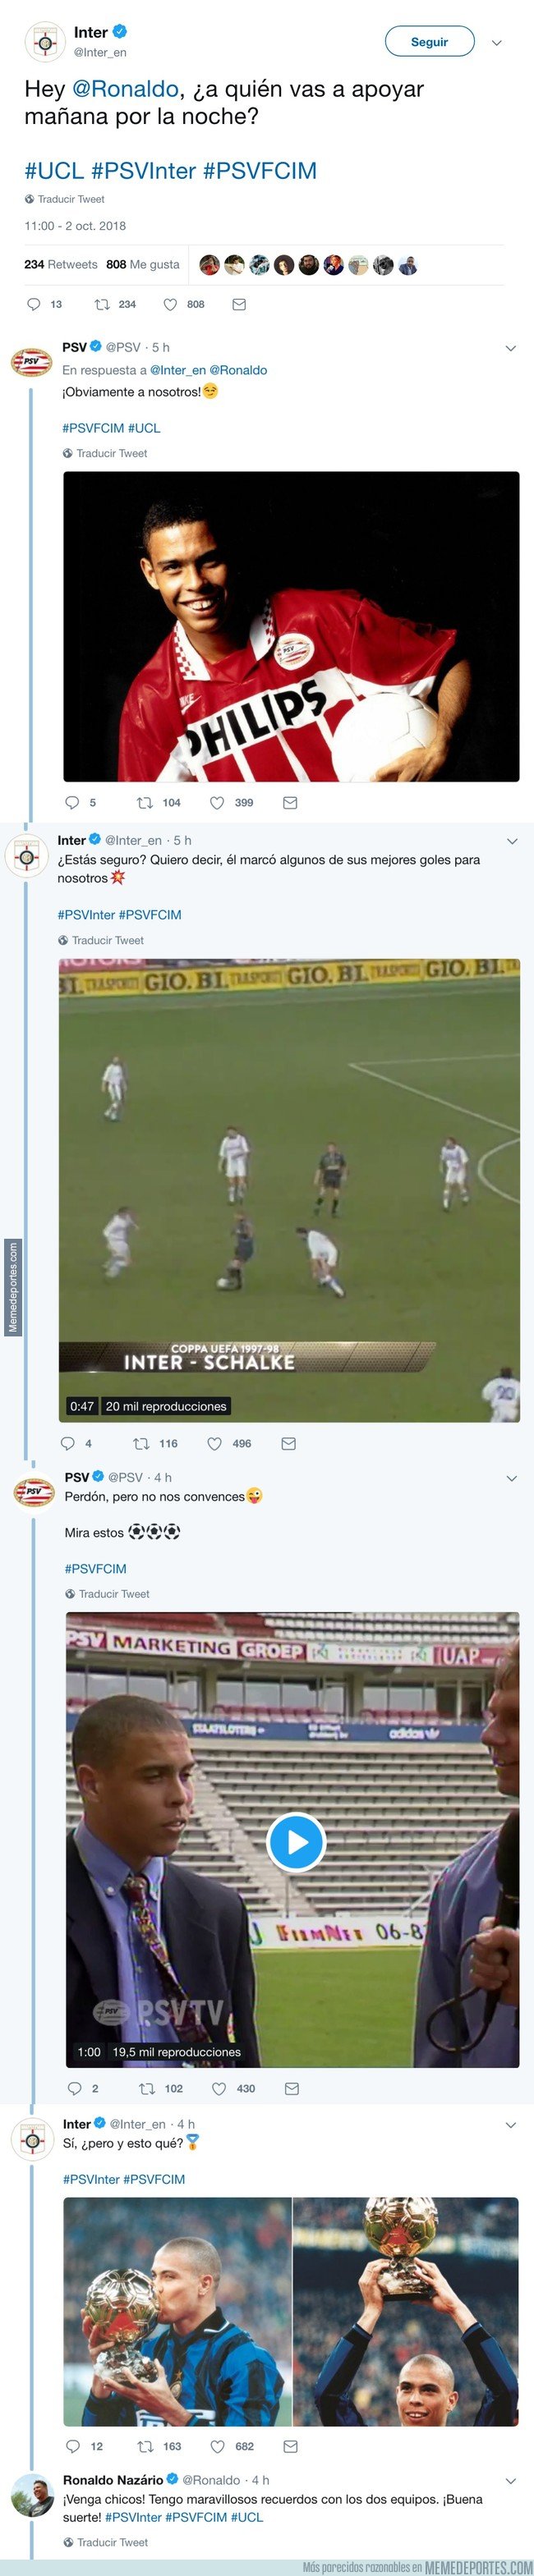 1052064 - Inter y PSV se pelean por Ronaldo en Twitter y tiene que intervenir él para hacerlos callar